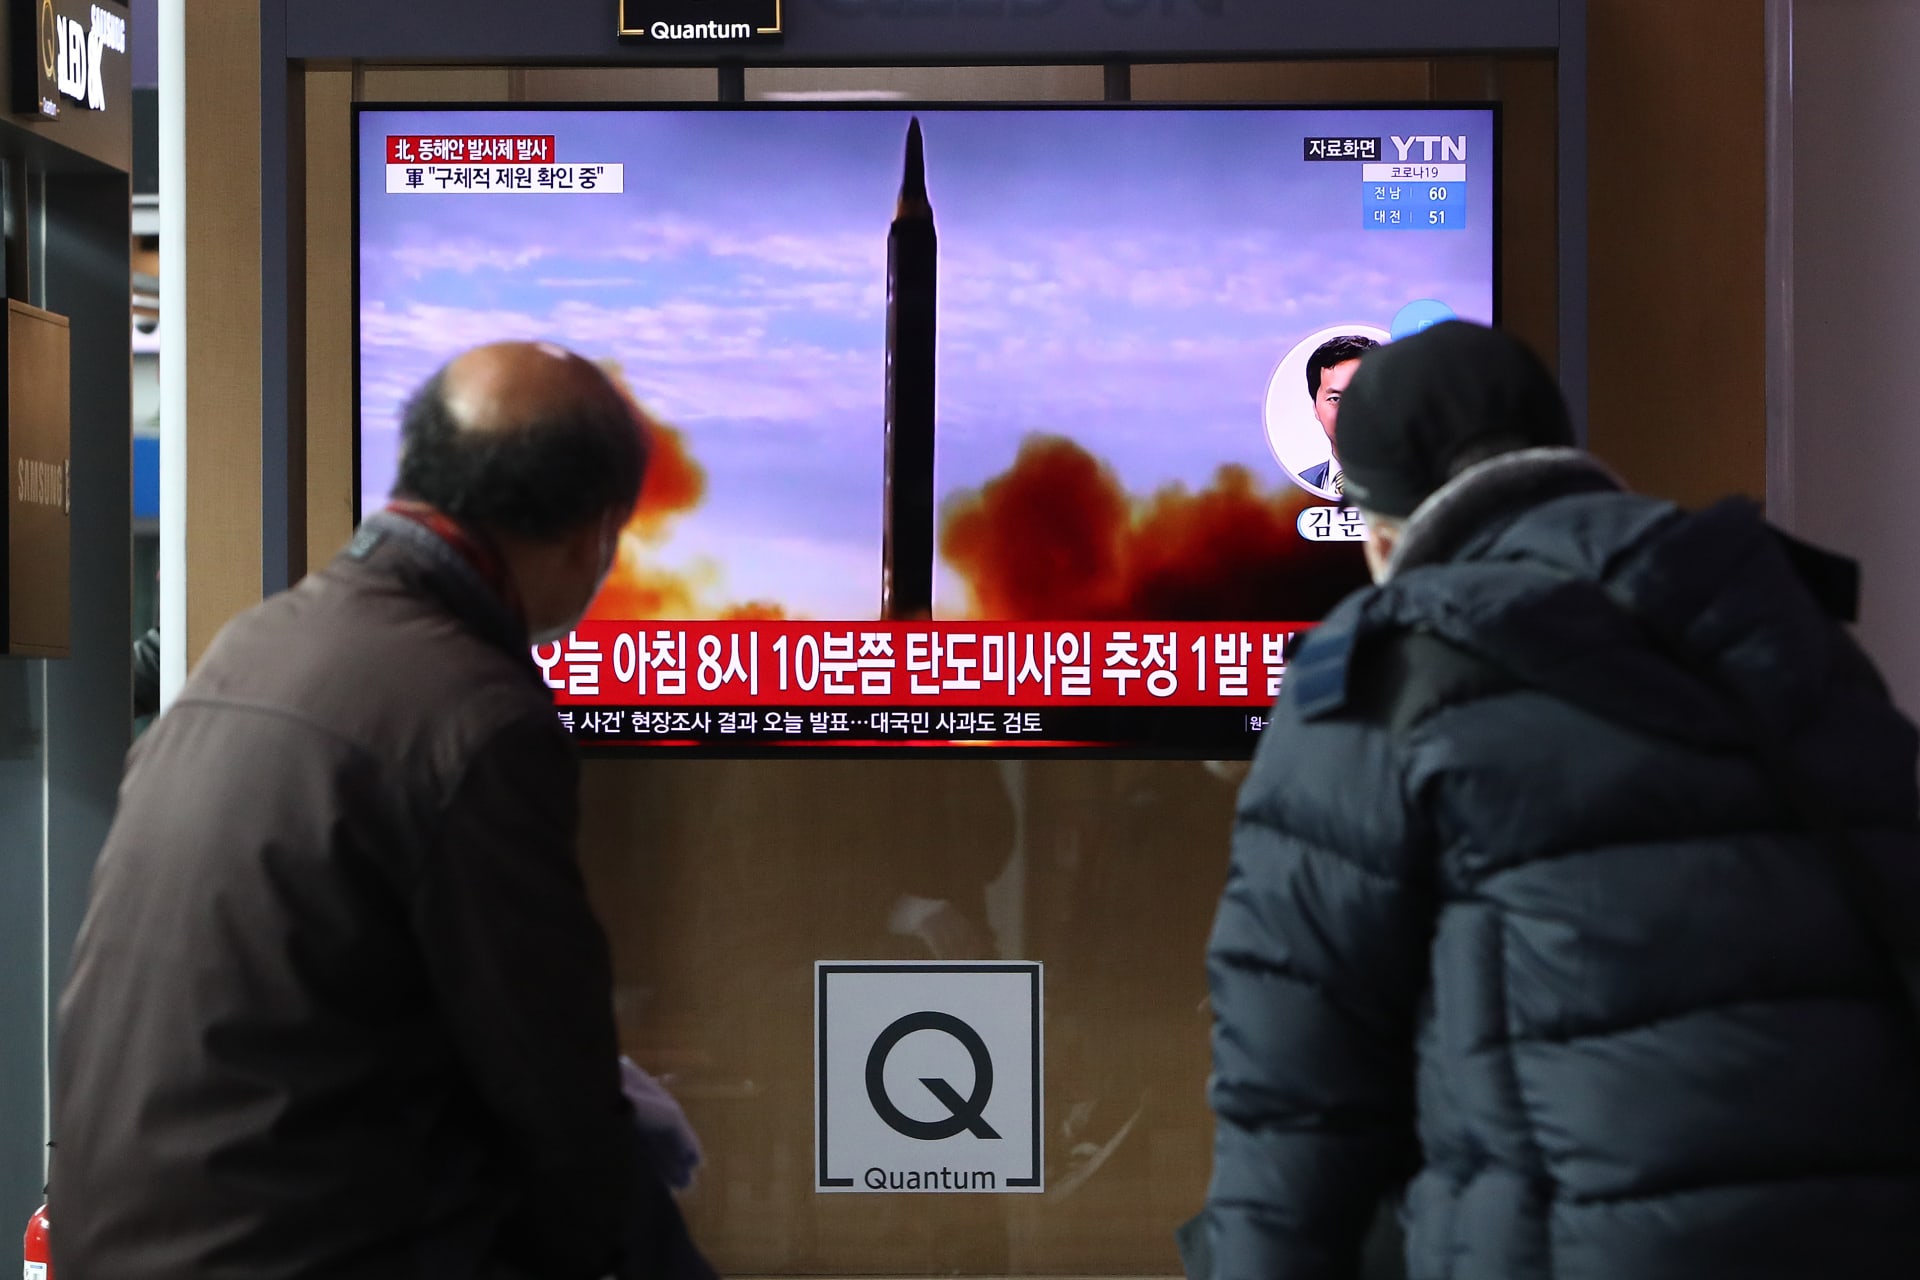 شخصان يشاهدان تلفزيونا في محطة سكة حديد سيول يعرض صورة لصاروخ أطلقته كوريا الشمالية في 5 يناير 2022